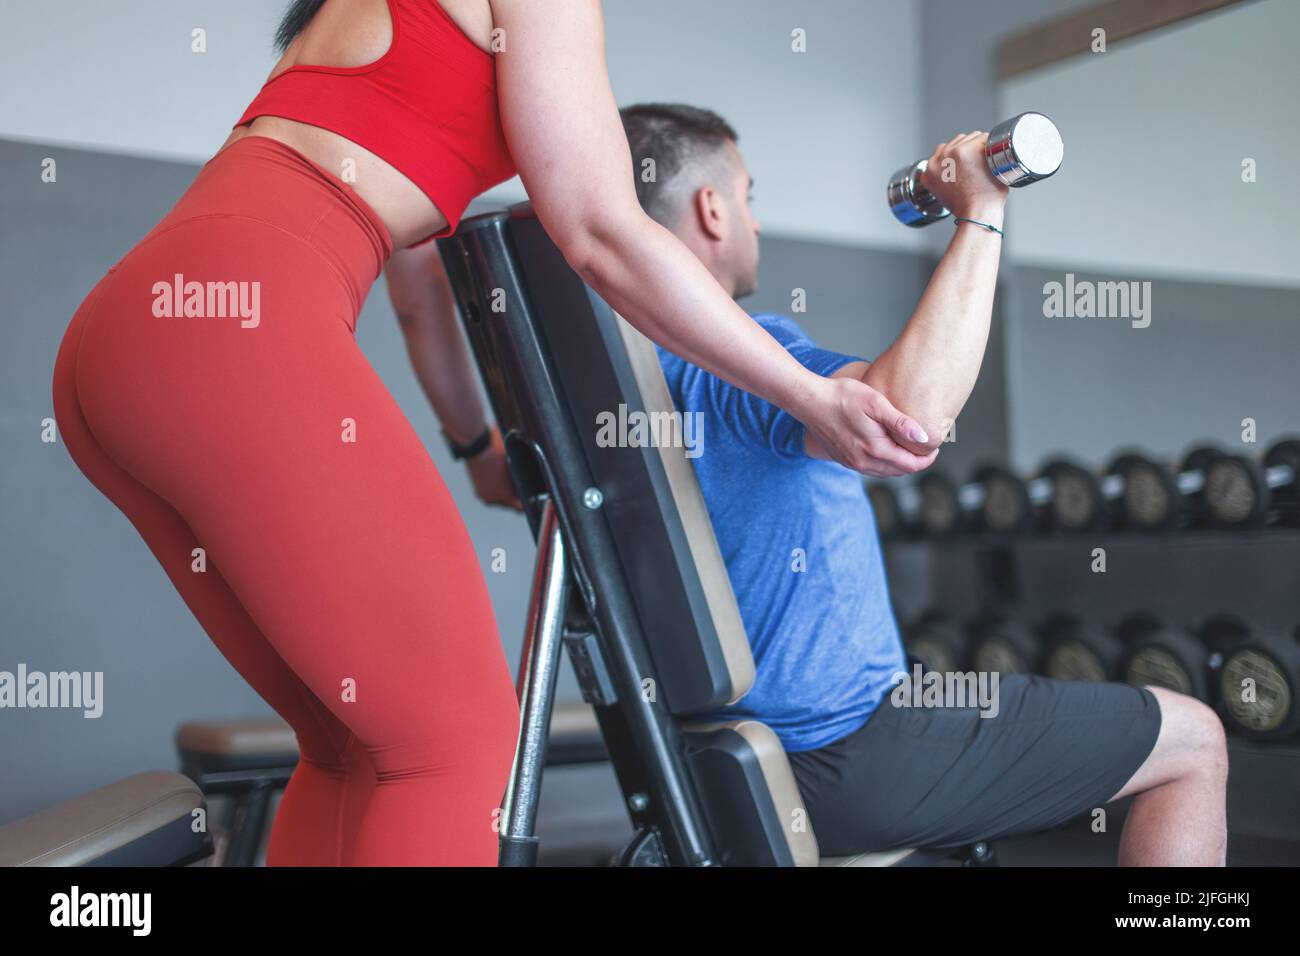 El entrenador ayuda a debilitar el entrenamiento del cliente mediante mancuernas en el gimnasio en el espejo Foto de stock